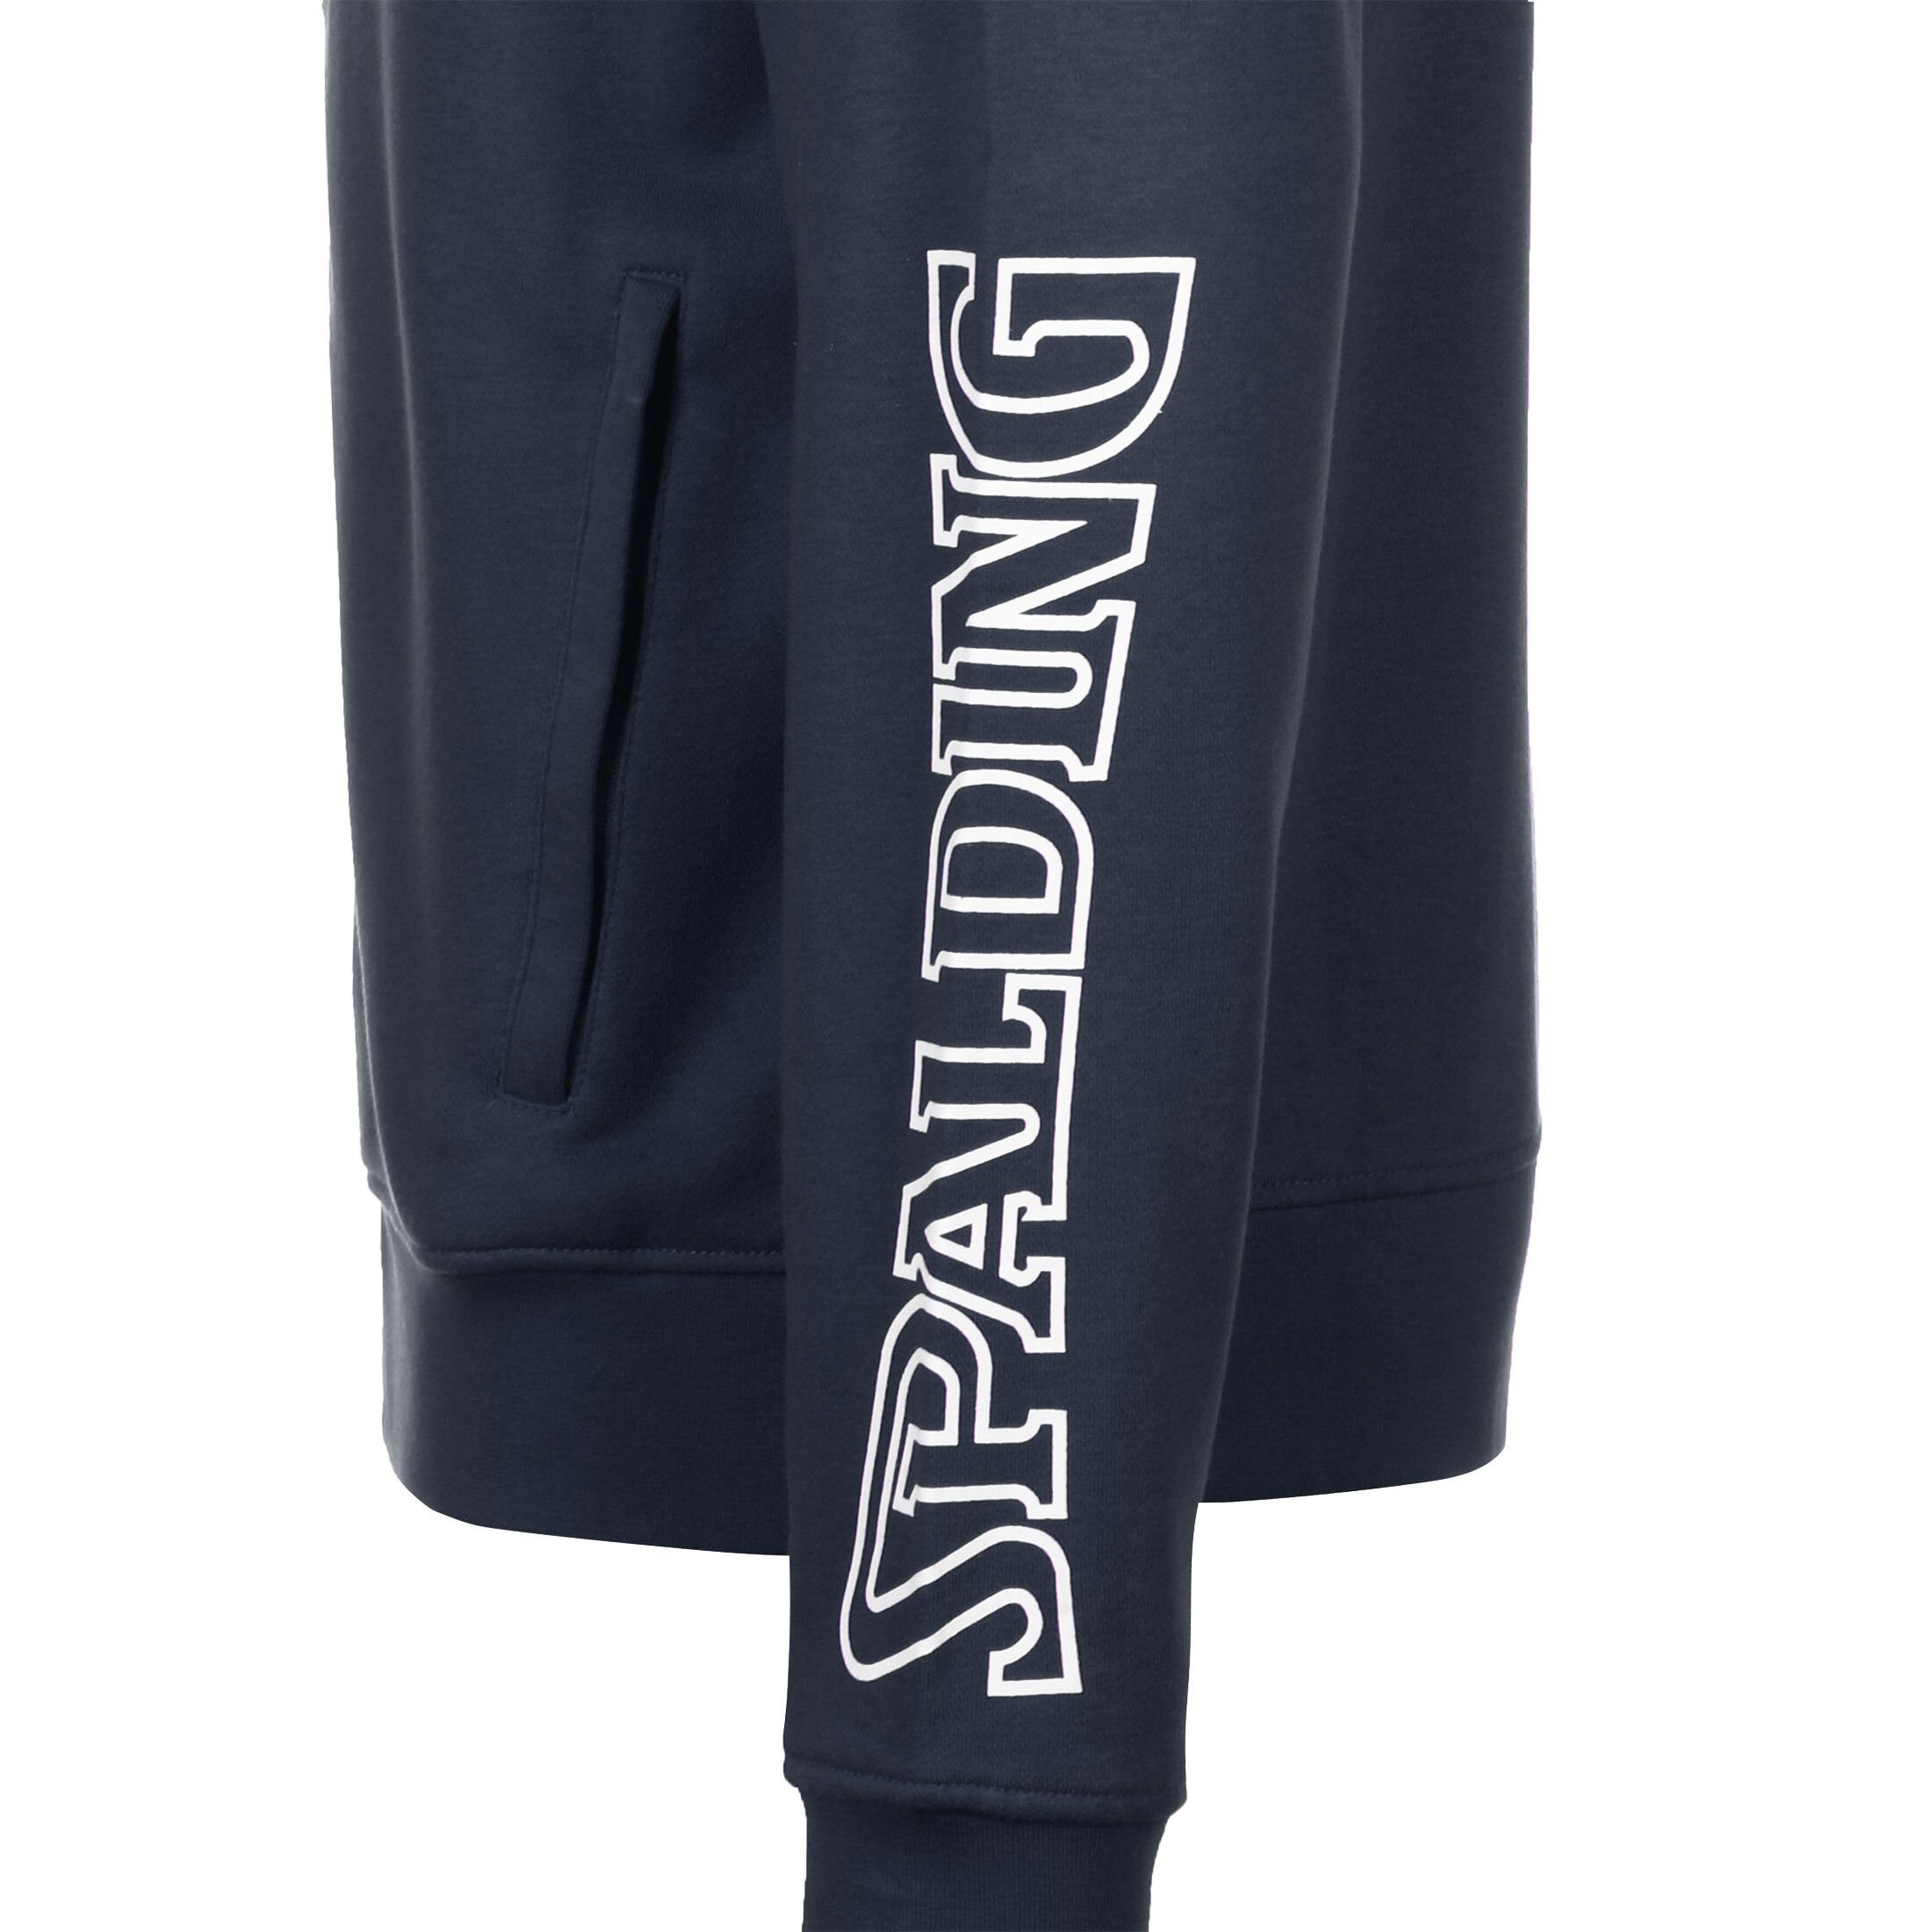 Spalding Trainingsjacke Team Trainingsjacke / II weiß dunkelblau